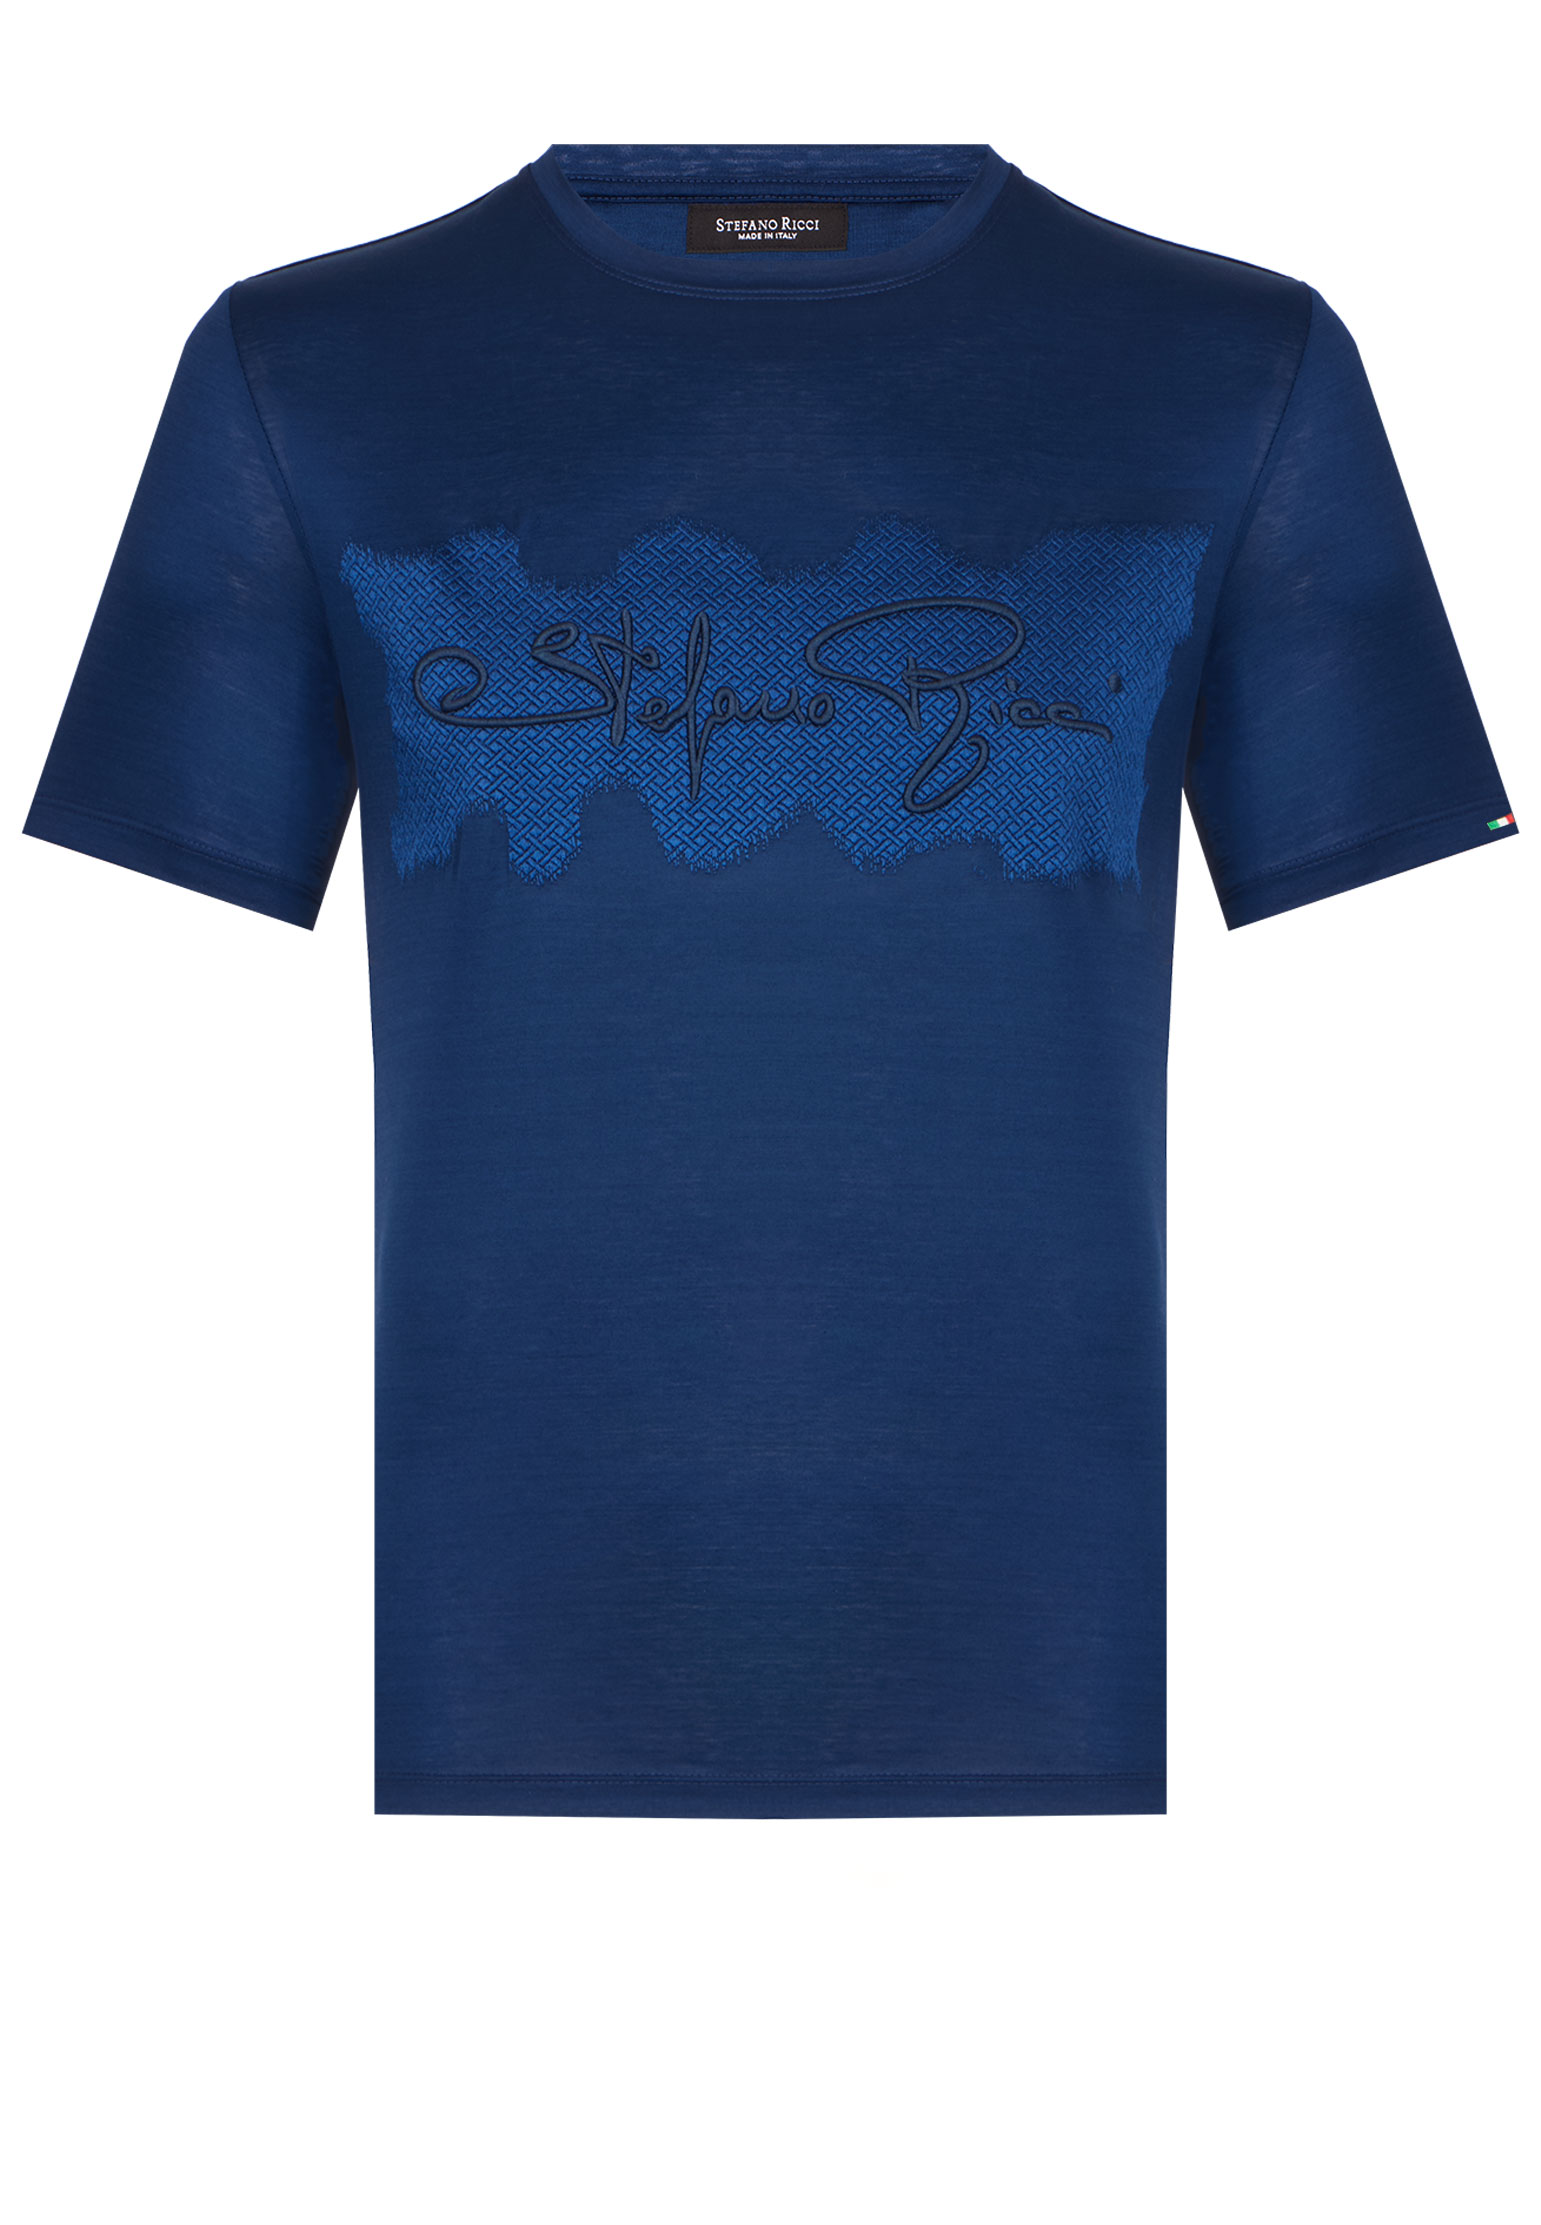 мужская футболка stefano ricci, синяя